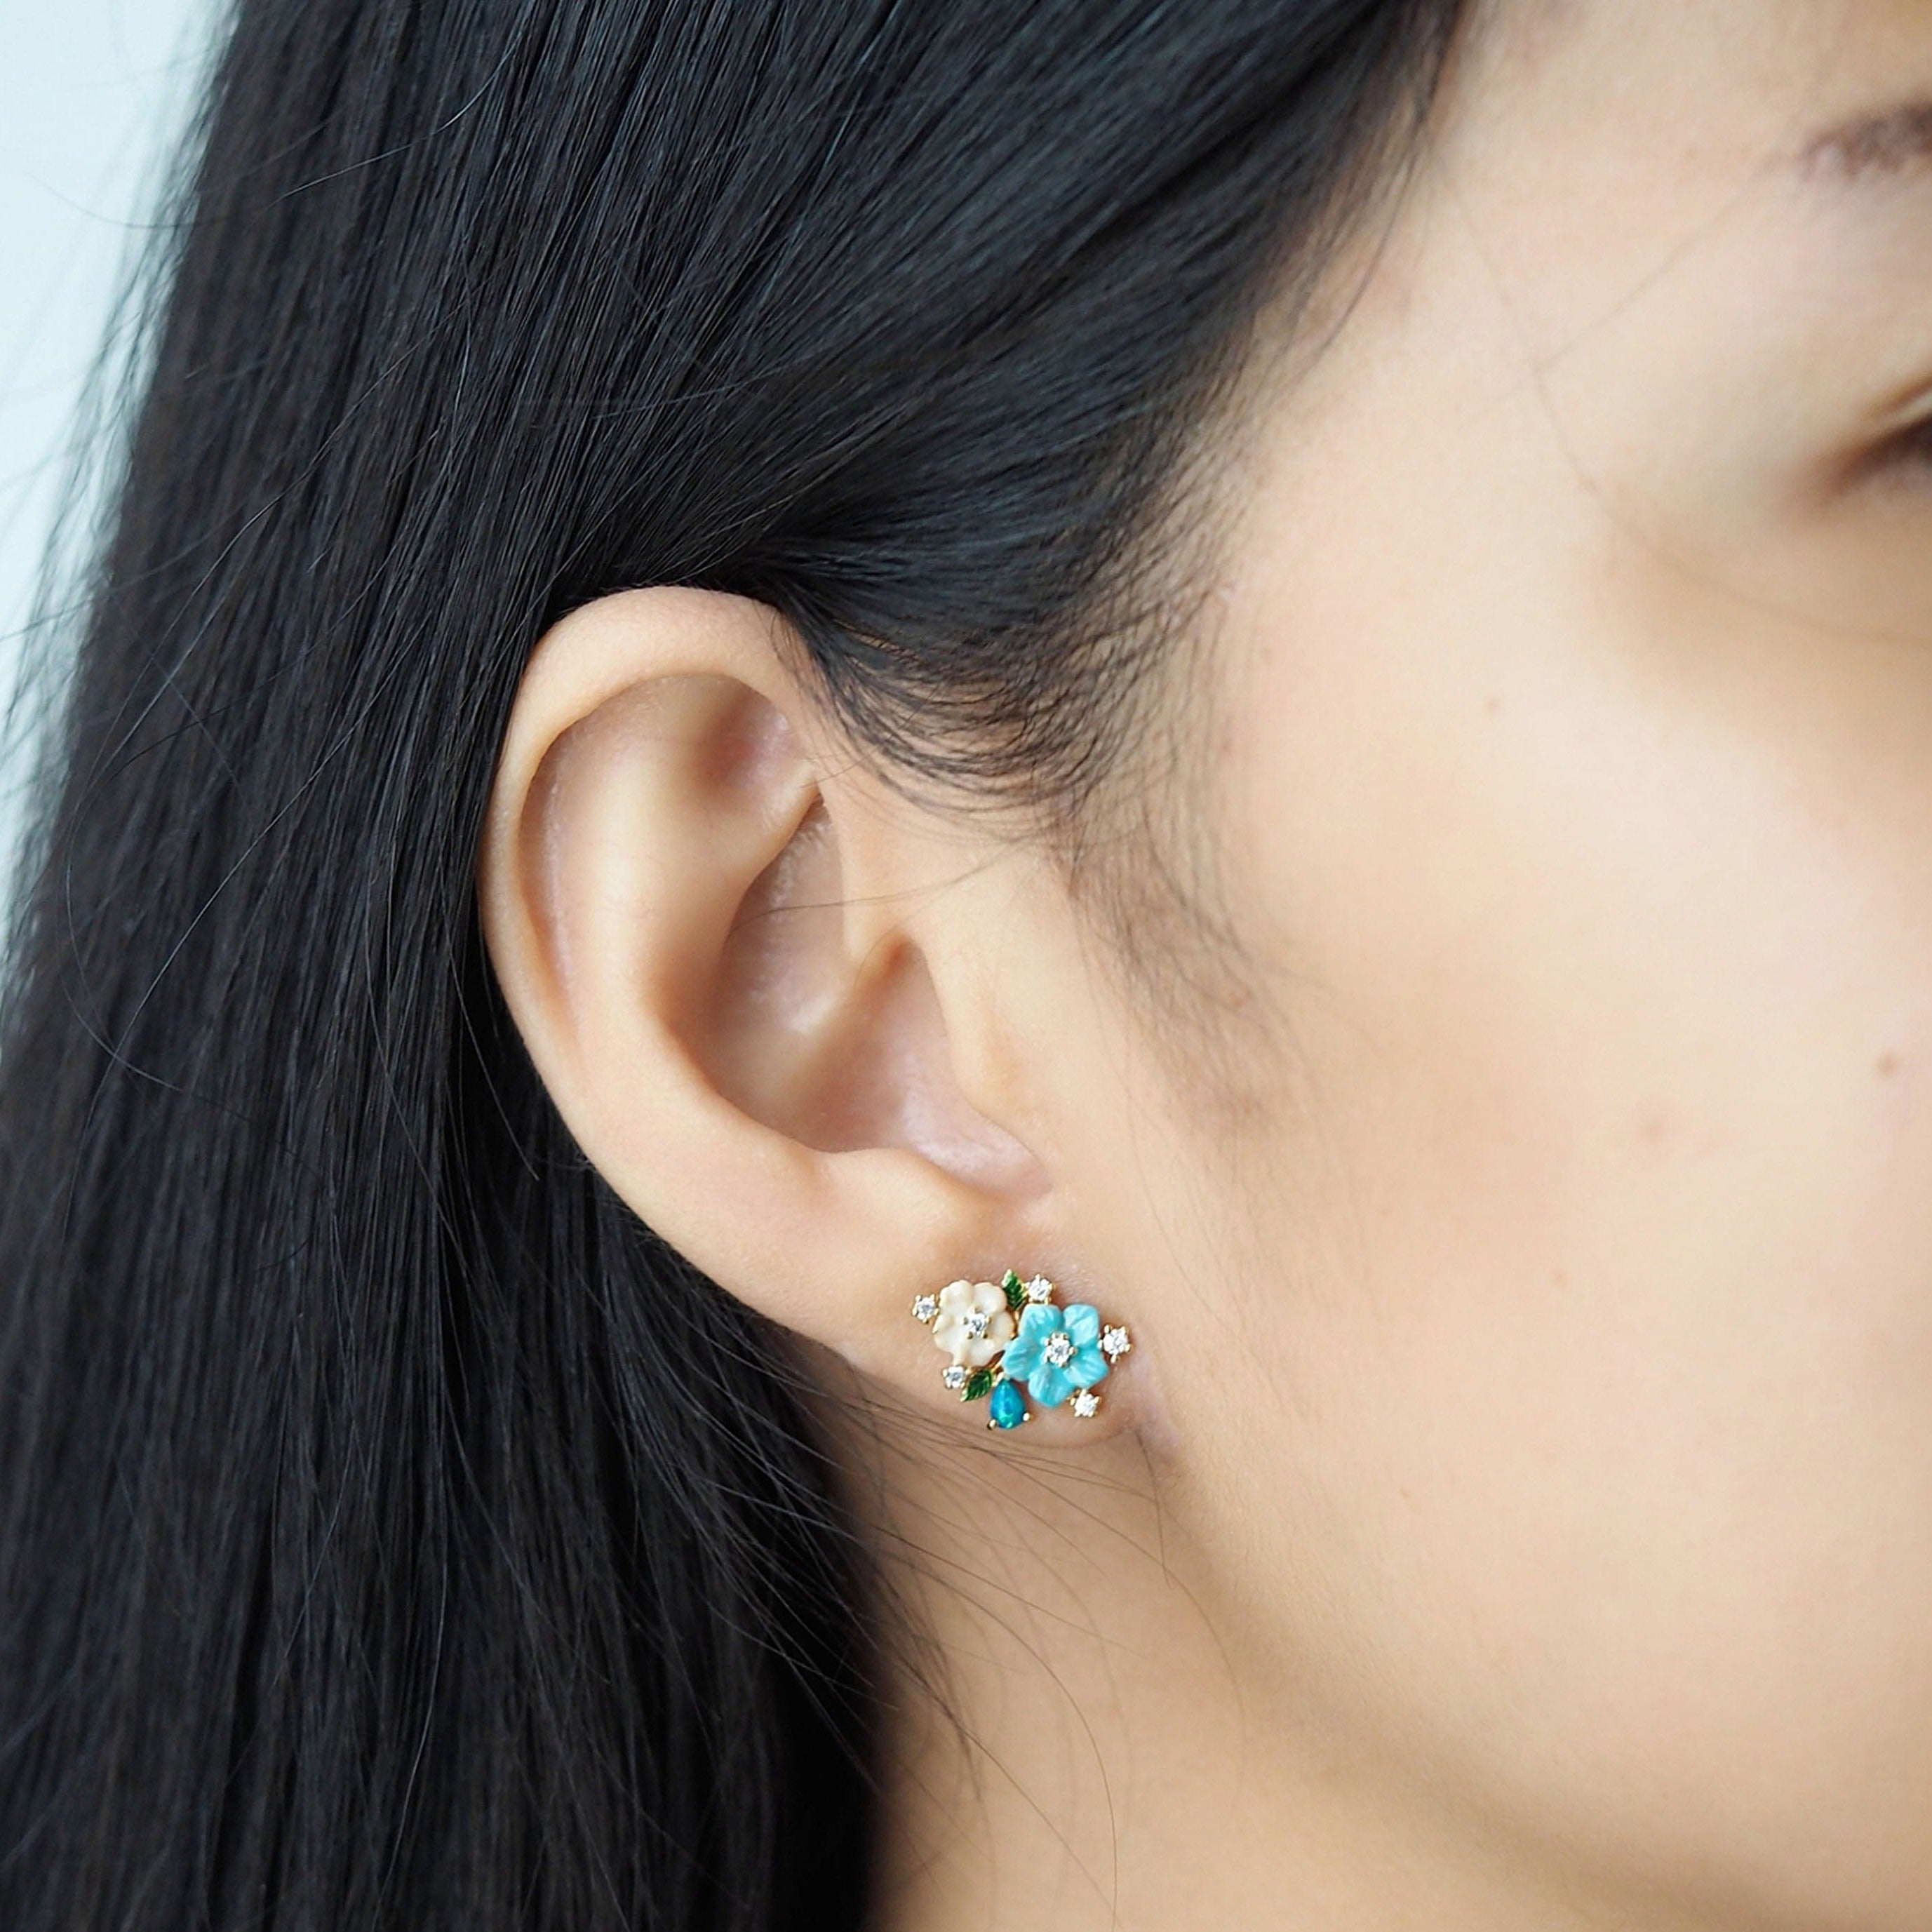 TAI JEWELRY Earrings Cluster Flower Stud